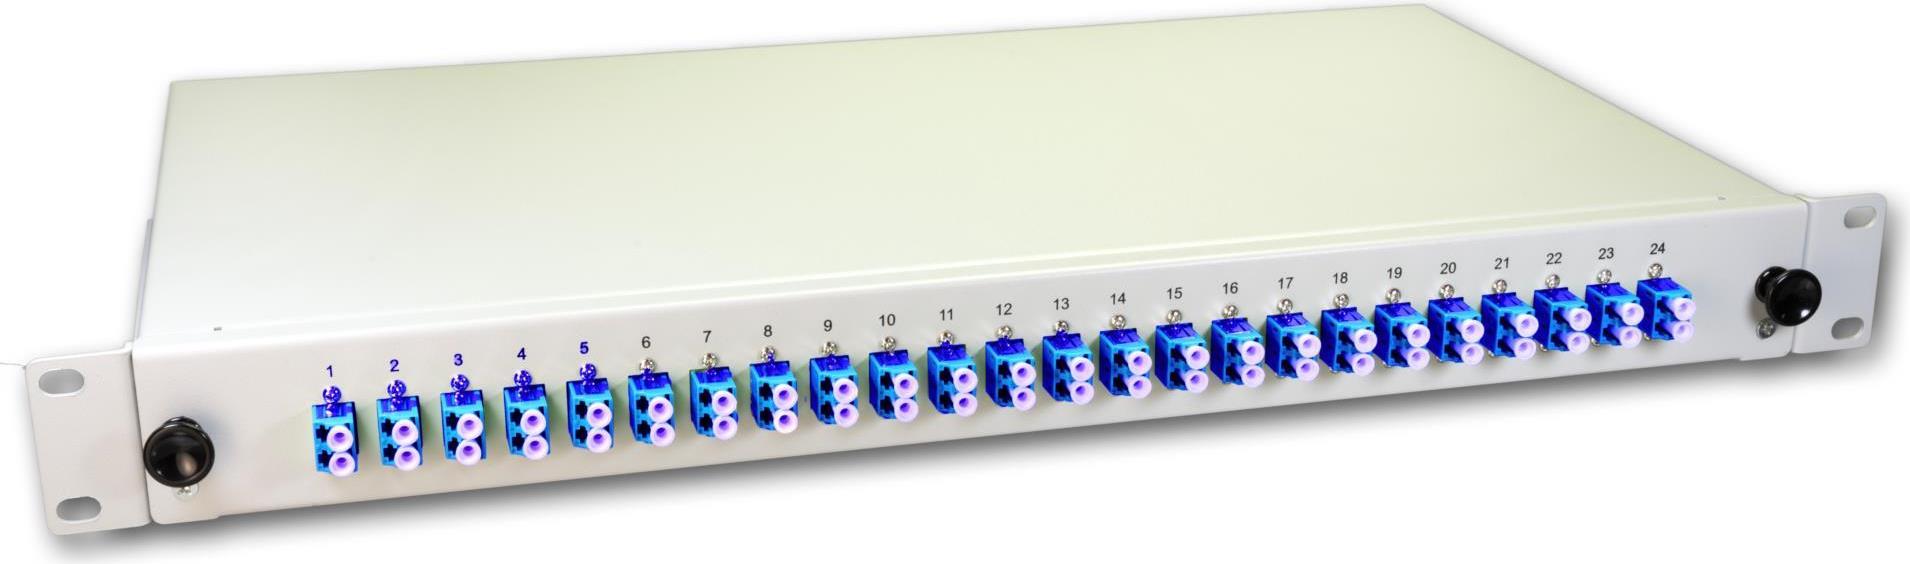 Lightwin LWL Spleissbox, 48 Fasern, 24x DLC Singlemode, 9/125µm OS2 G657.A1 Pigtail Spleißboxen (SPBOX 48E09 OS2 DLC)